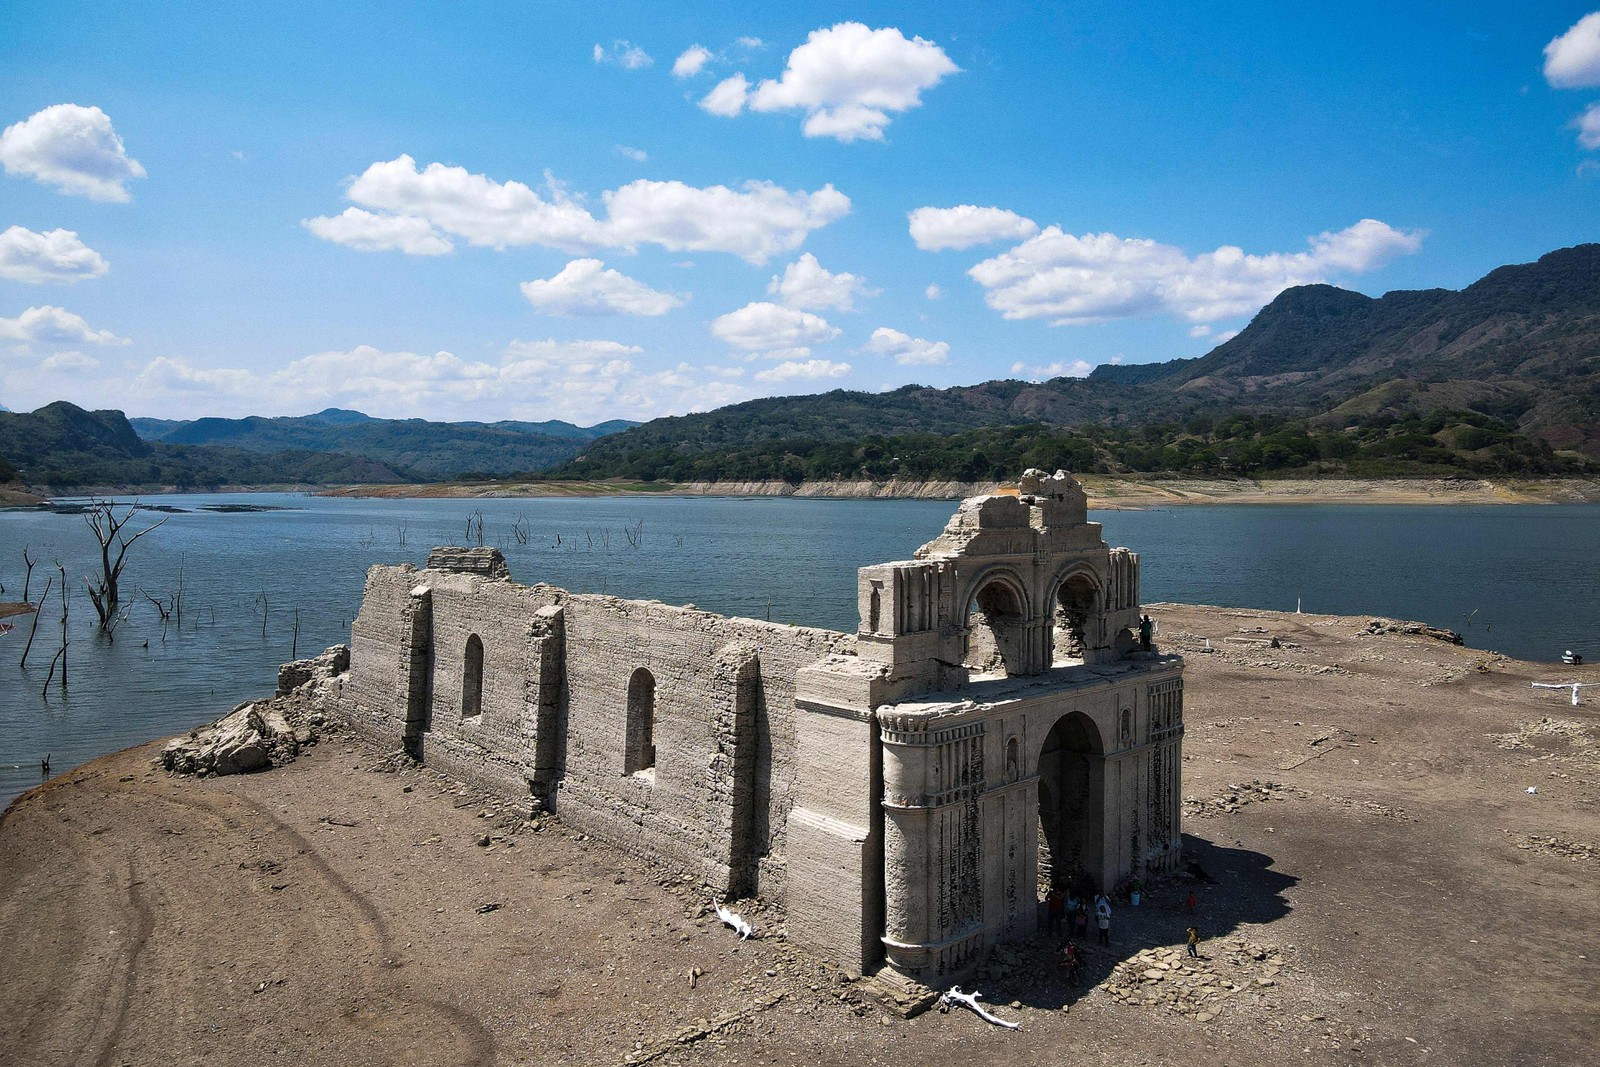 Igreja do século XVI estava submersa, mas ficou exposta devido à seca. — Foto: RAUL VERA / AFP